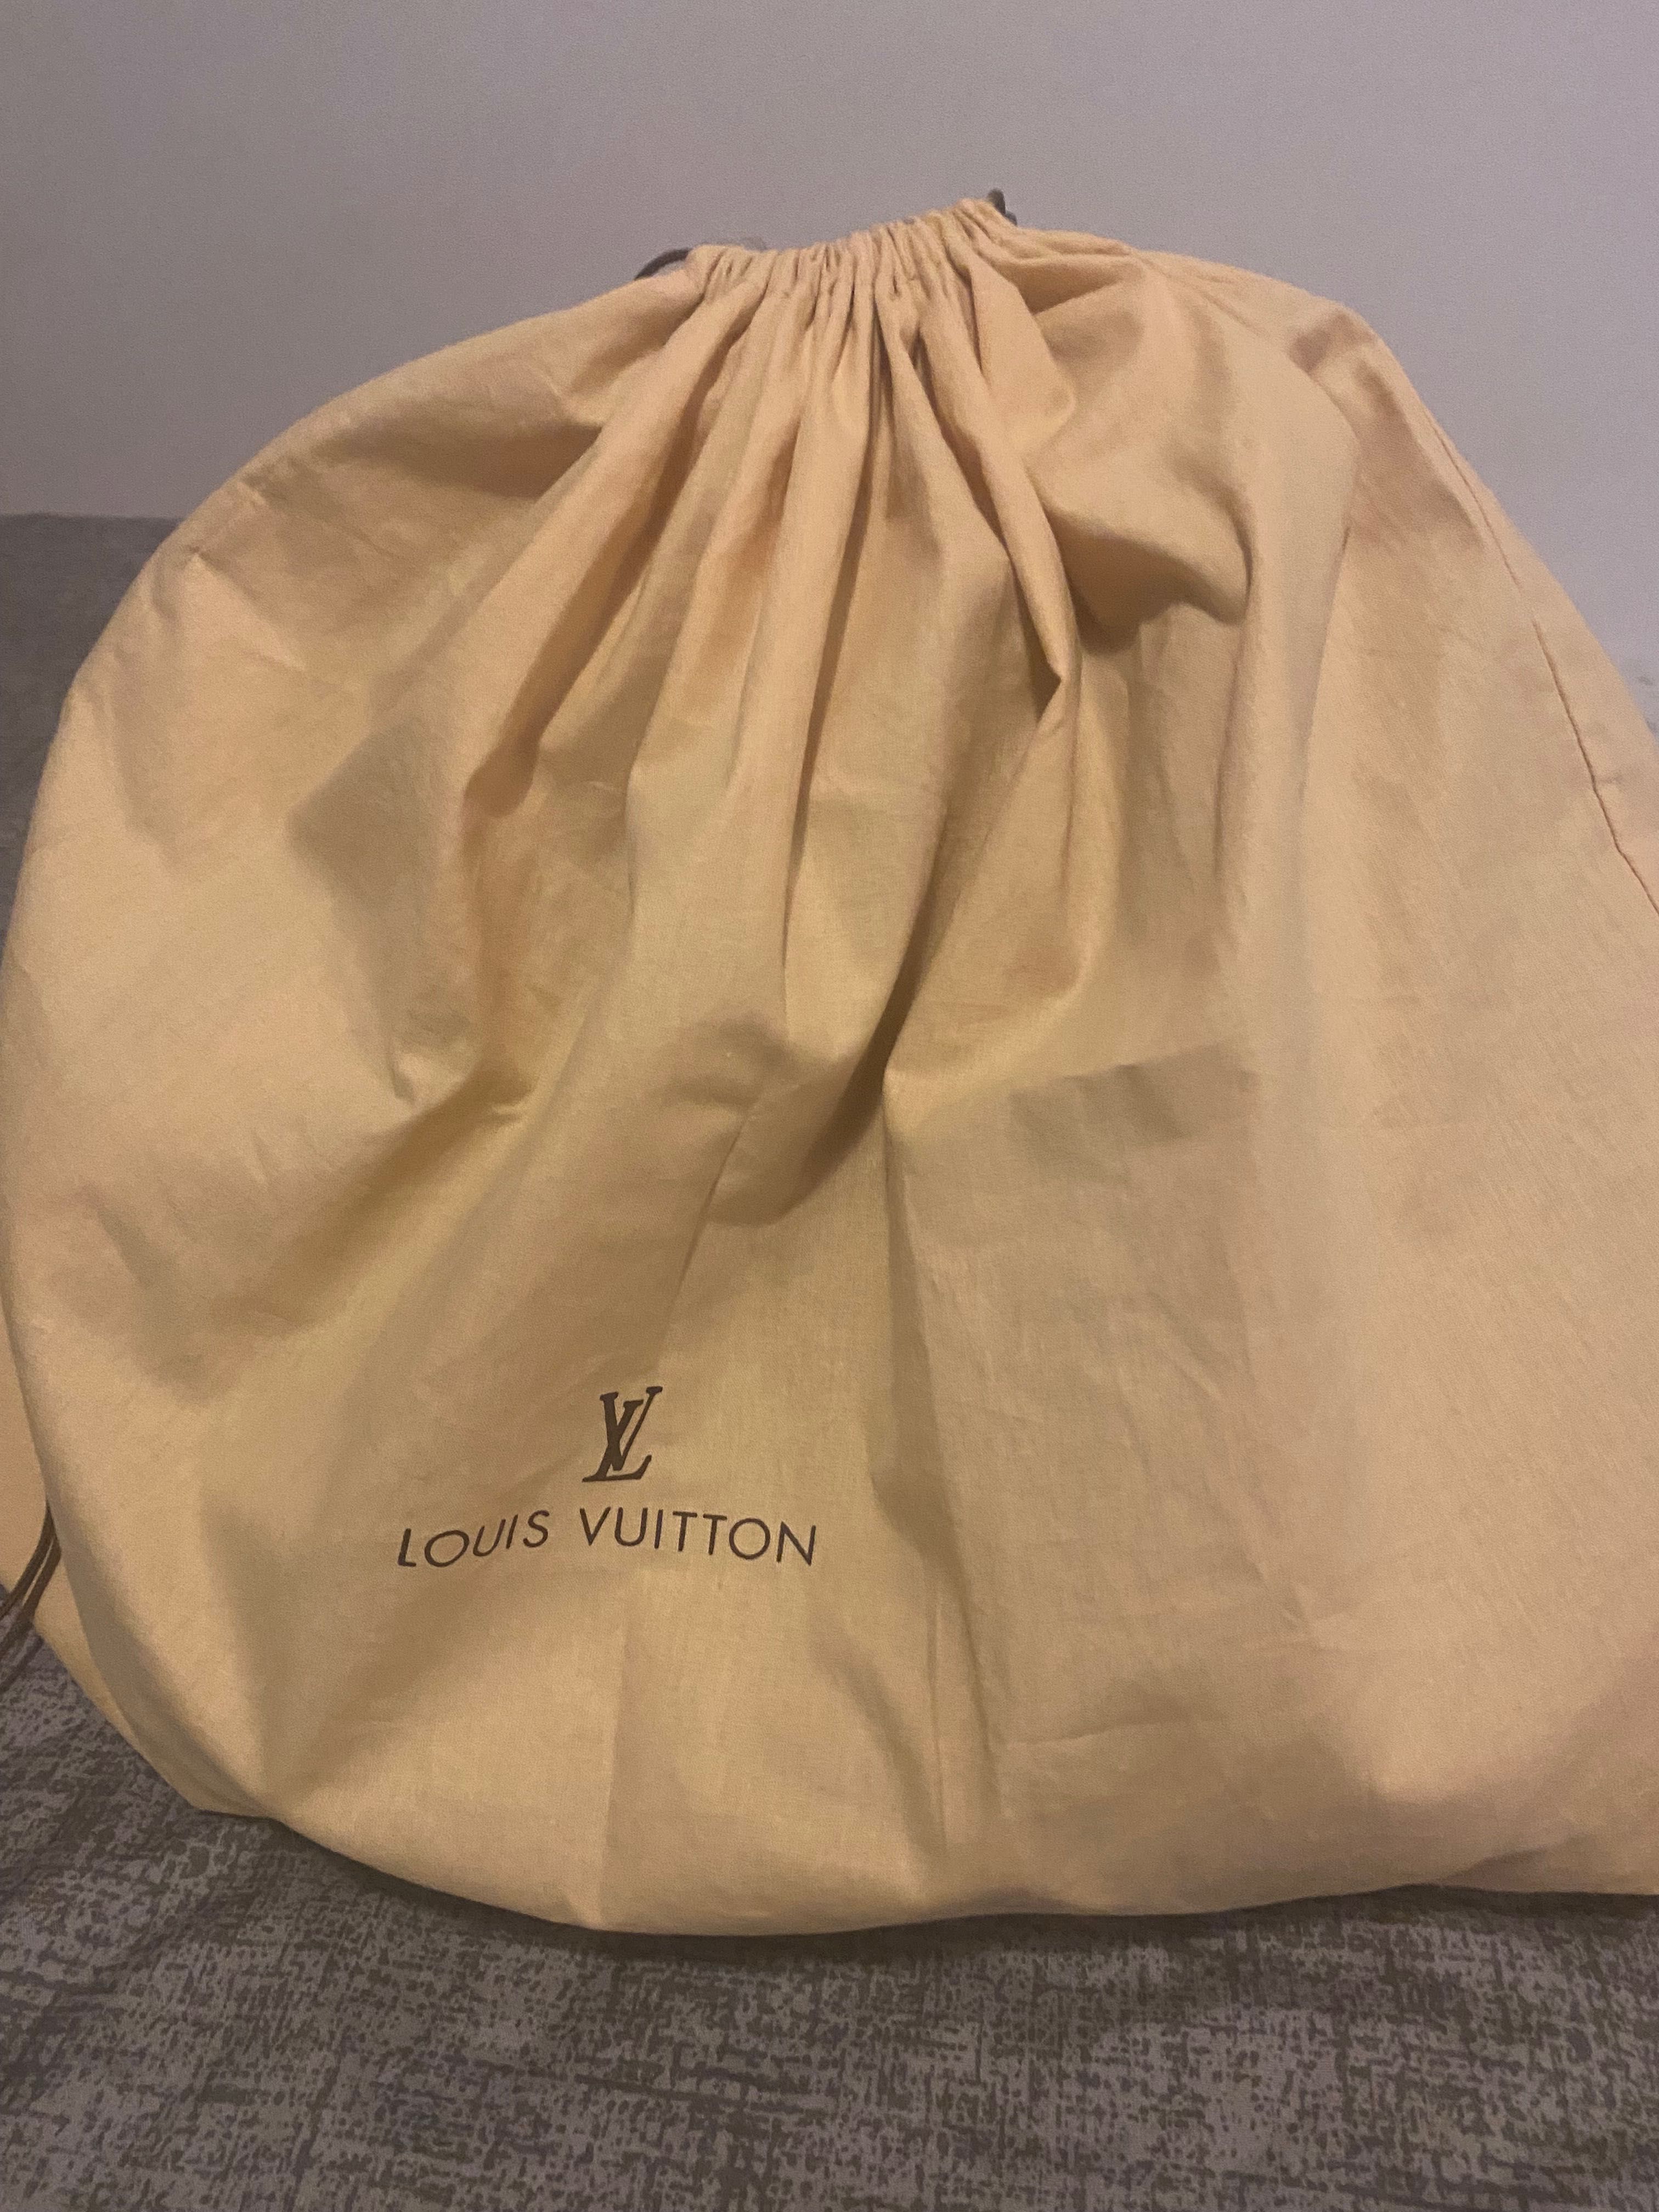 Geanta tip sac, din piele, maro, Luis Vuitton